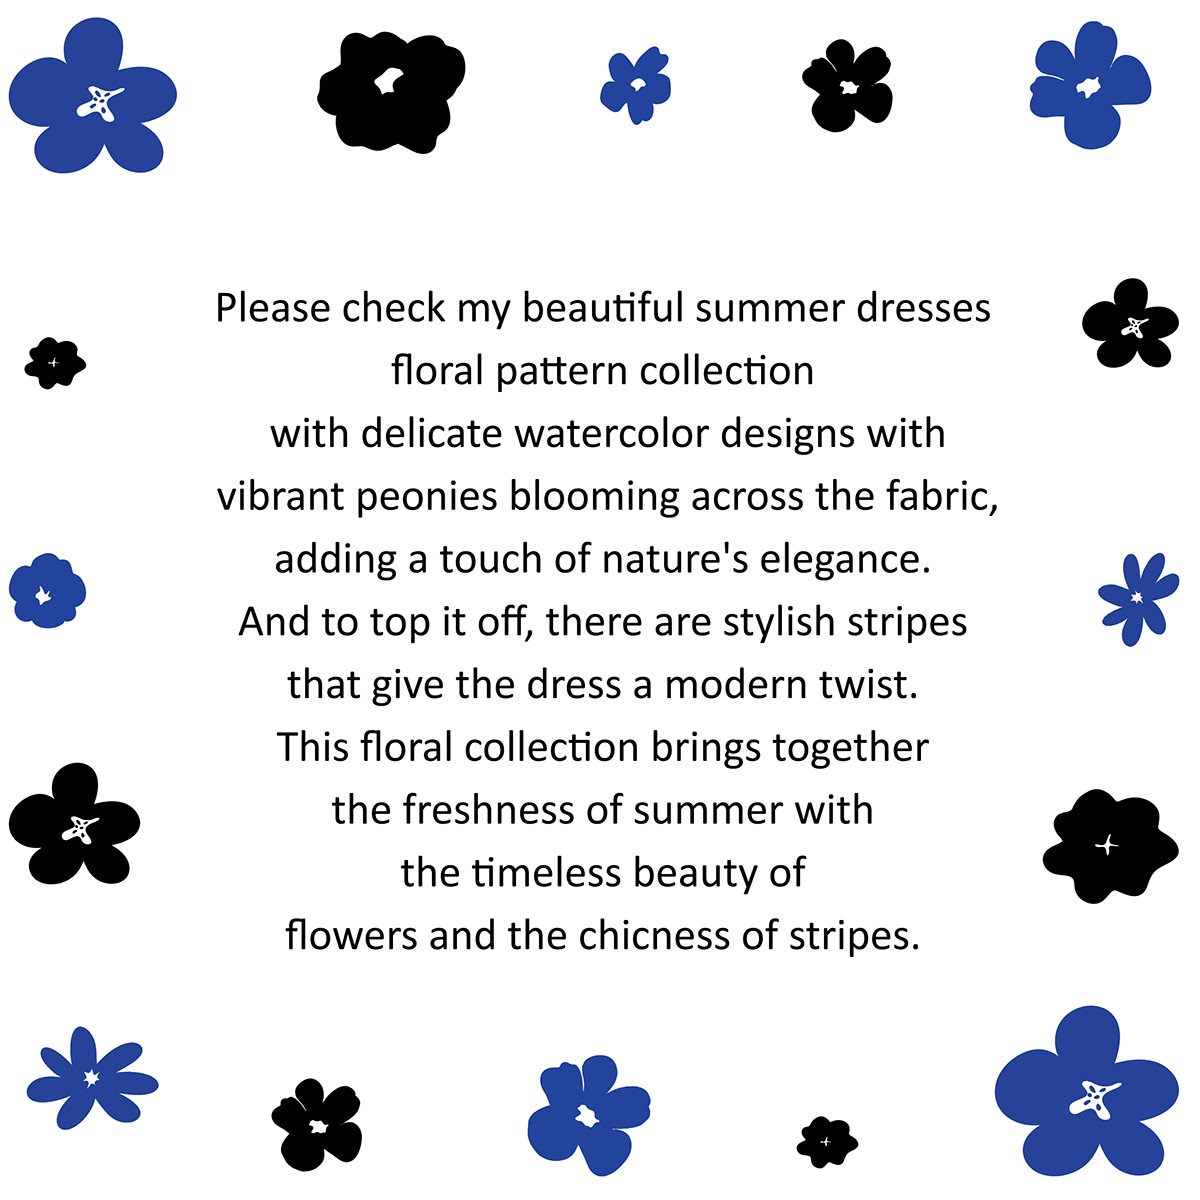 summer botanical illustration Flowers dresses floral pattern seamless Floral design textile fashion illustration botany pattern